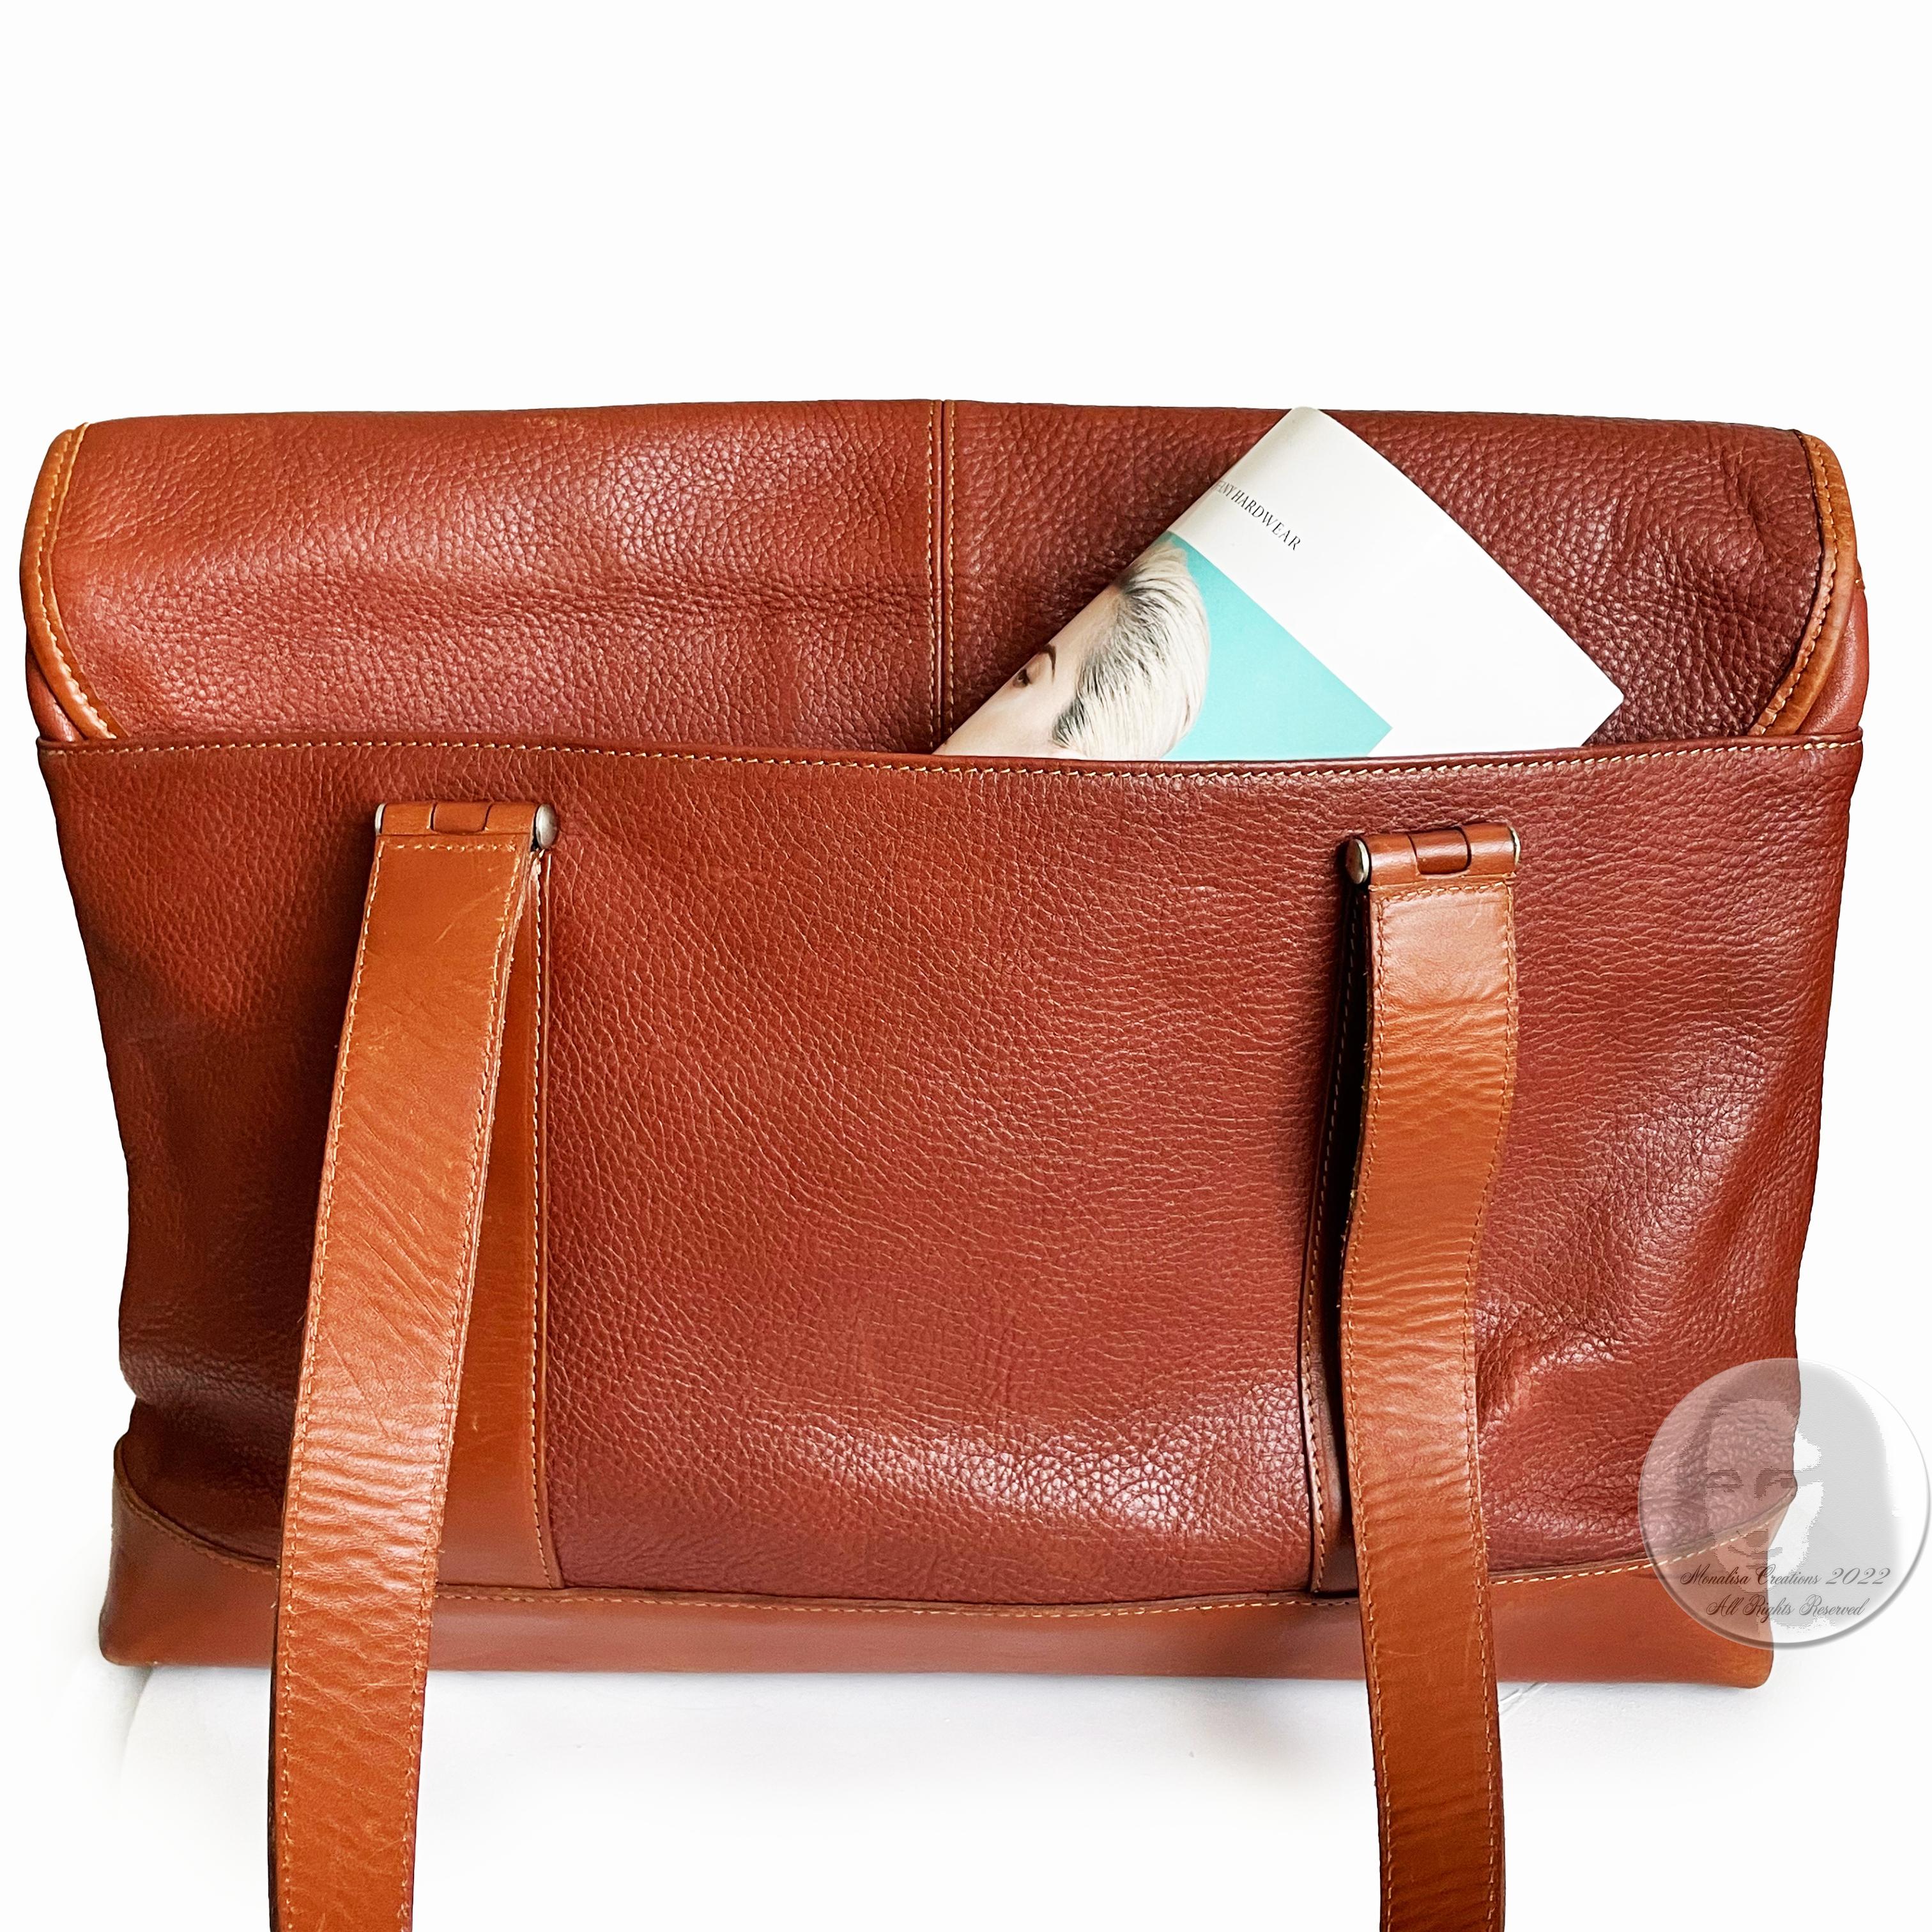 Hartmann Business Bag Briefcase Computer or Shoulder Bag British Tan Leather 4